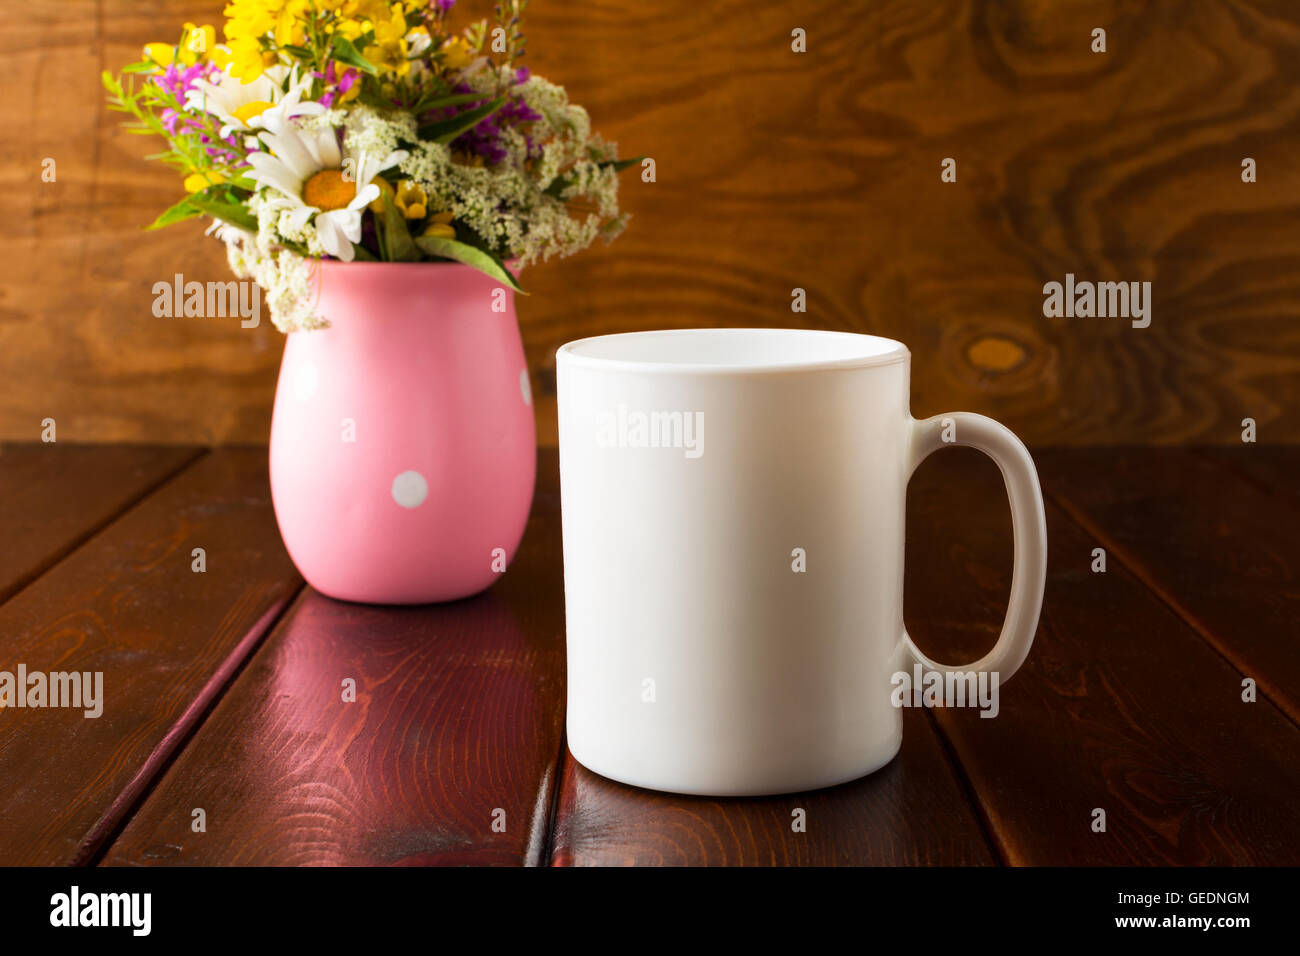 Tasse à café blanc immersive avec des fleurs sauvages. Mug vide immersive pour la présentation du produit. Tasse de café de la maquette pour la promotion ou de la marque Banque D'Images